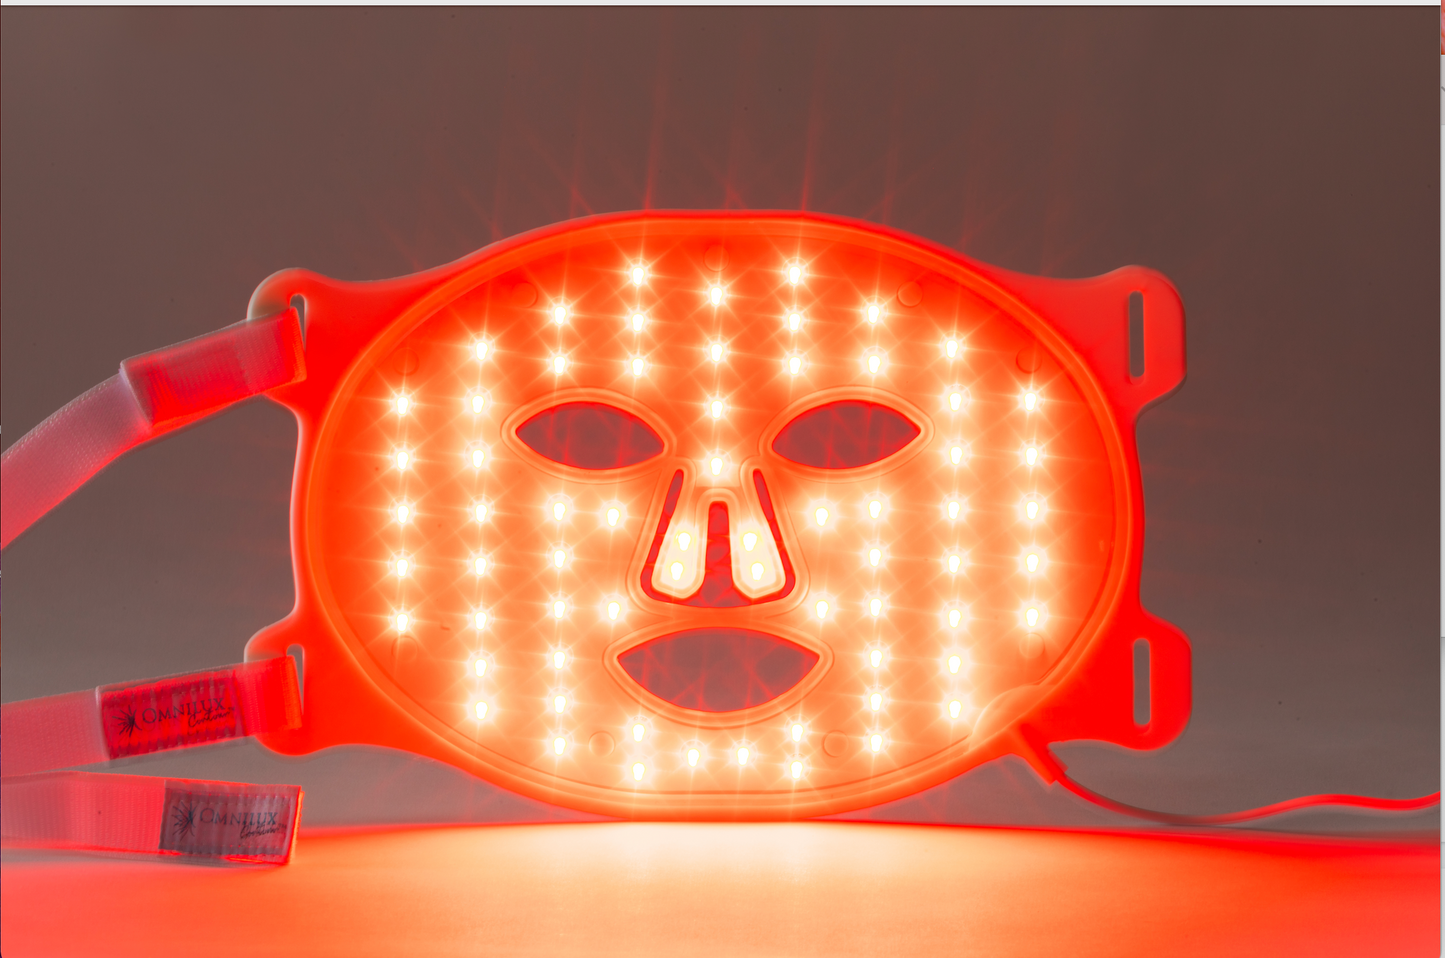 OMNILUX Contour LED Mask